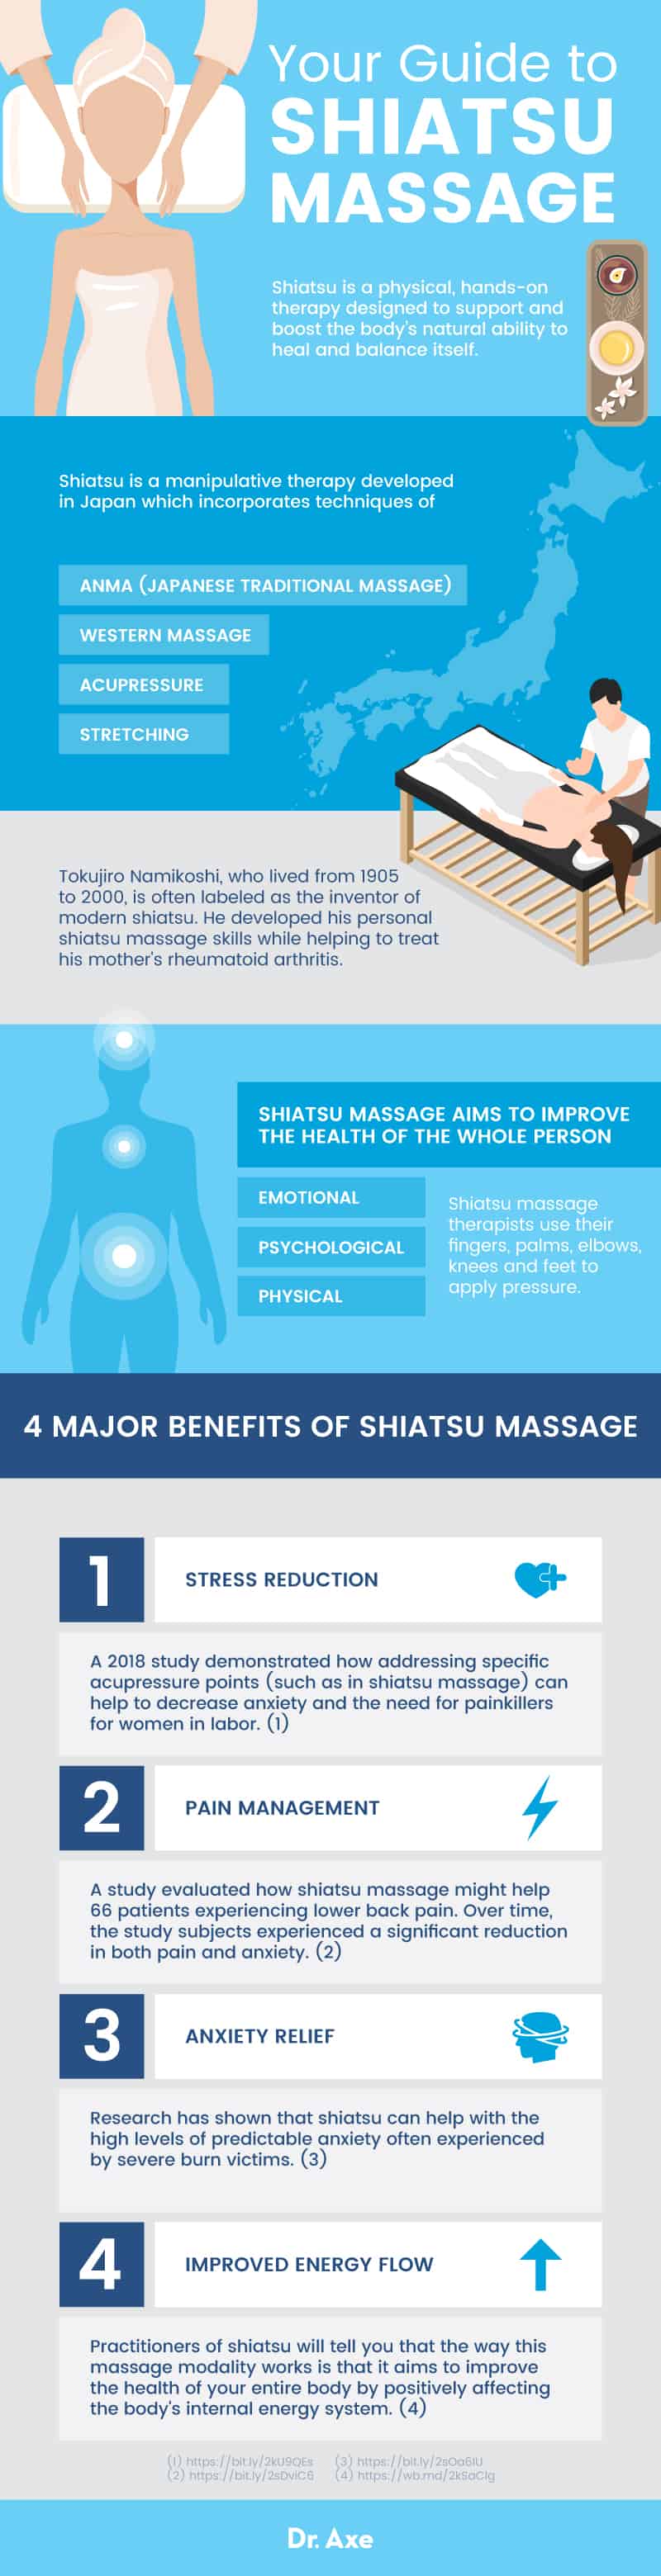 Shiatsu massage benefits - Dr. Axe